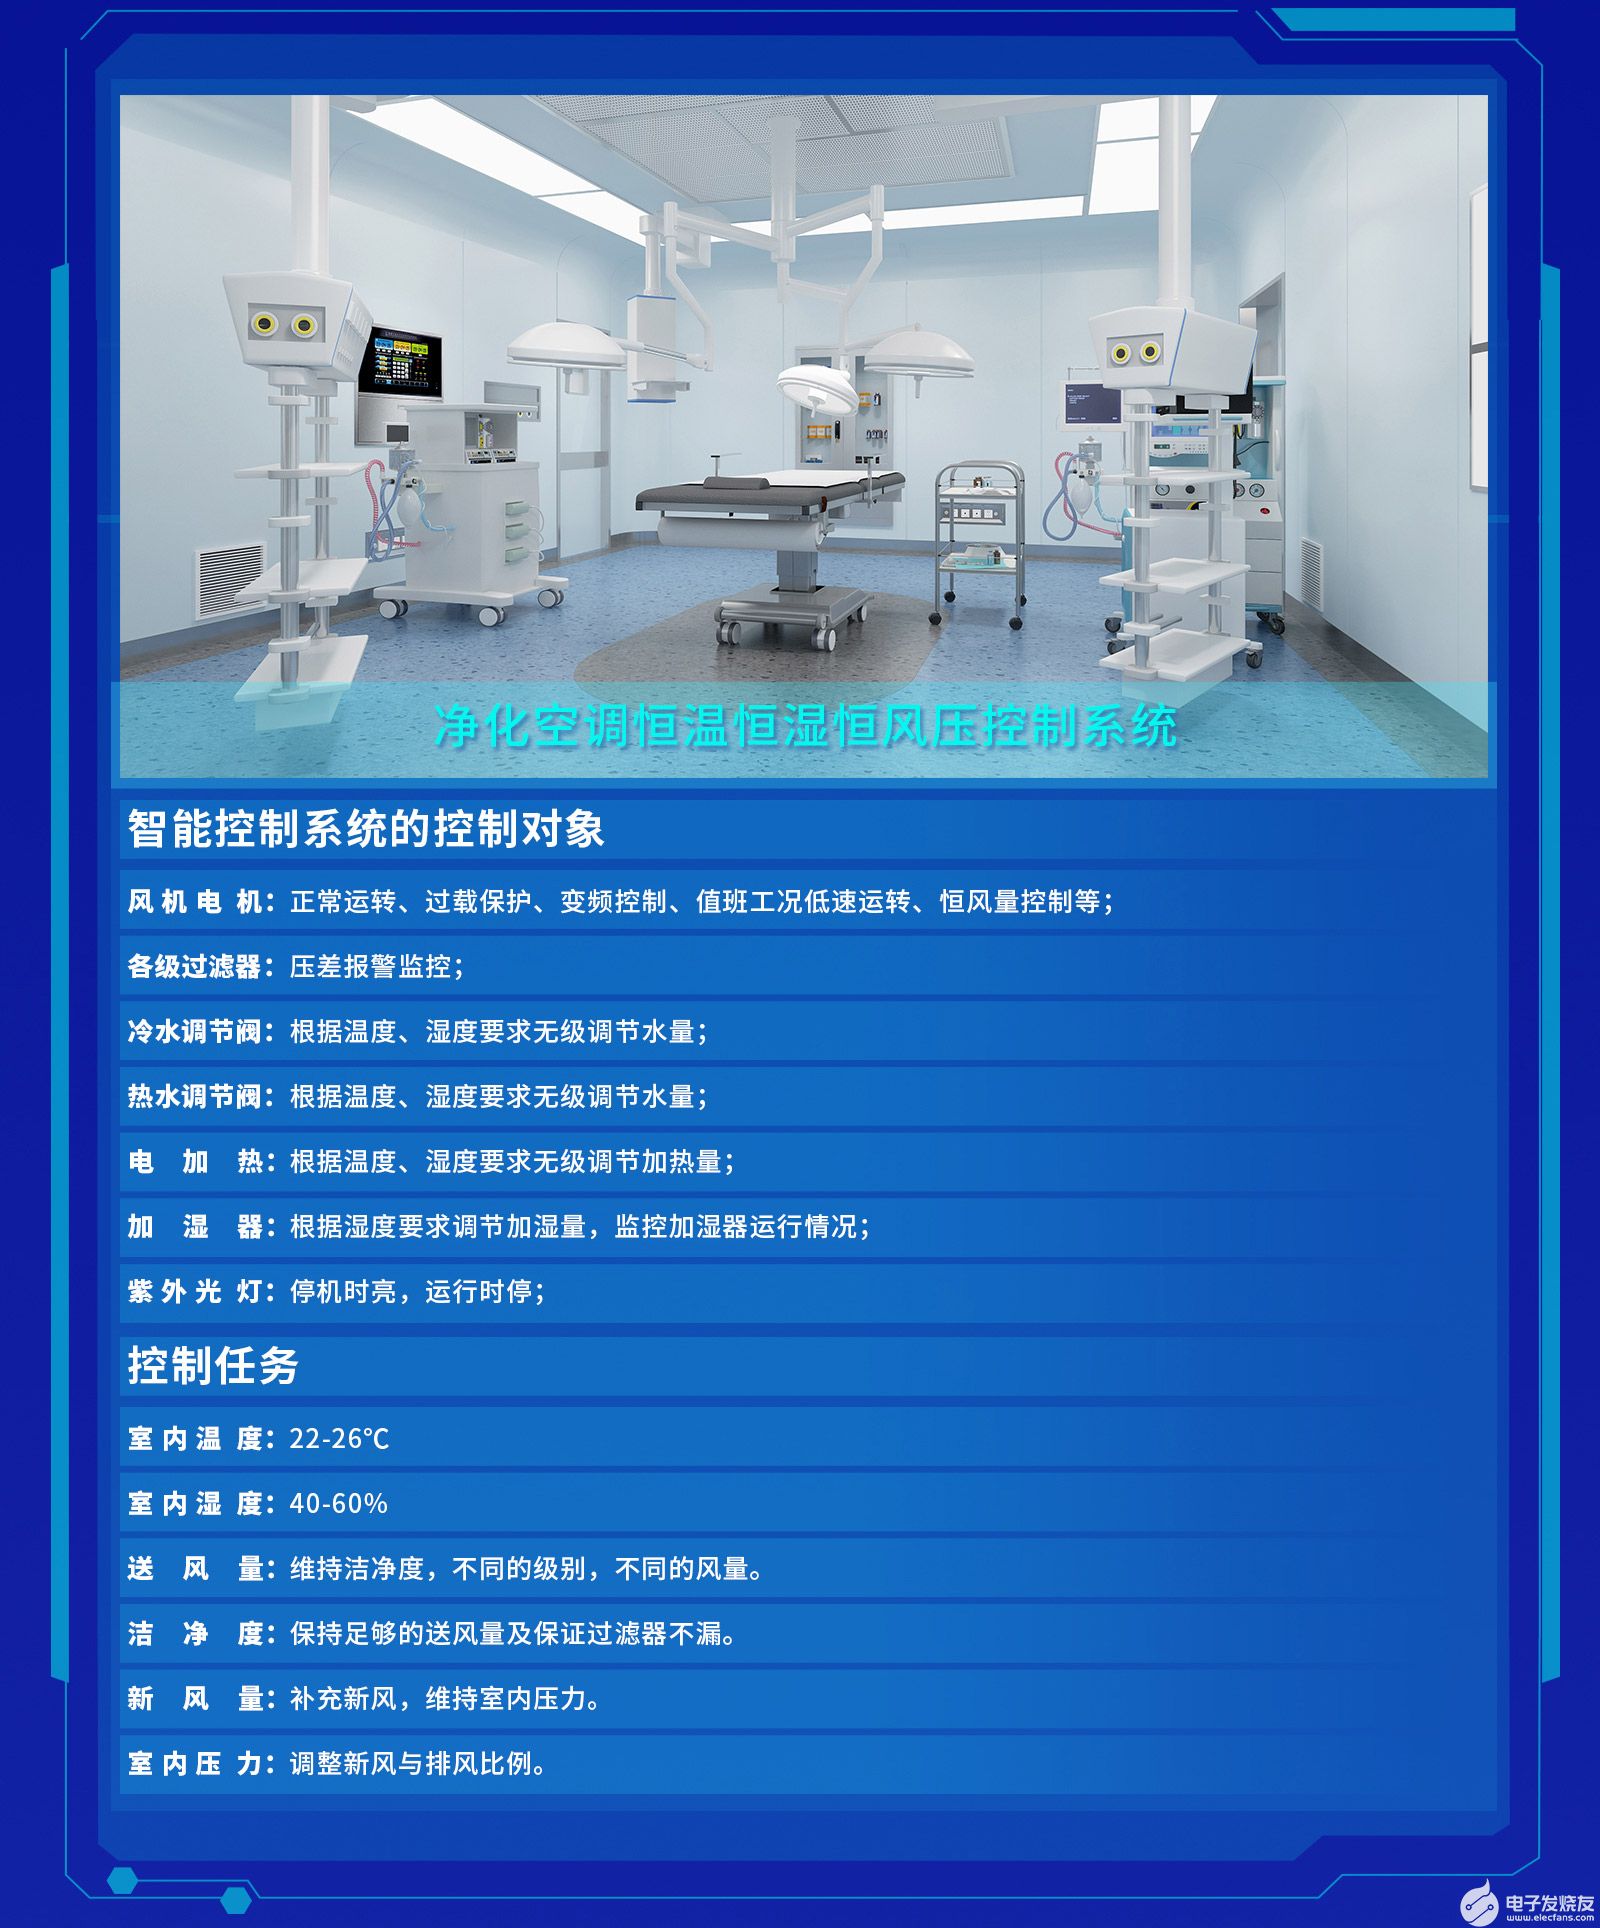 能迪科技®洁净手术室自控系统实施全过程控制，确保手术室无菌环境​